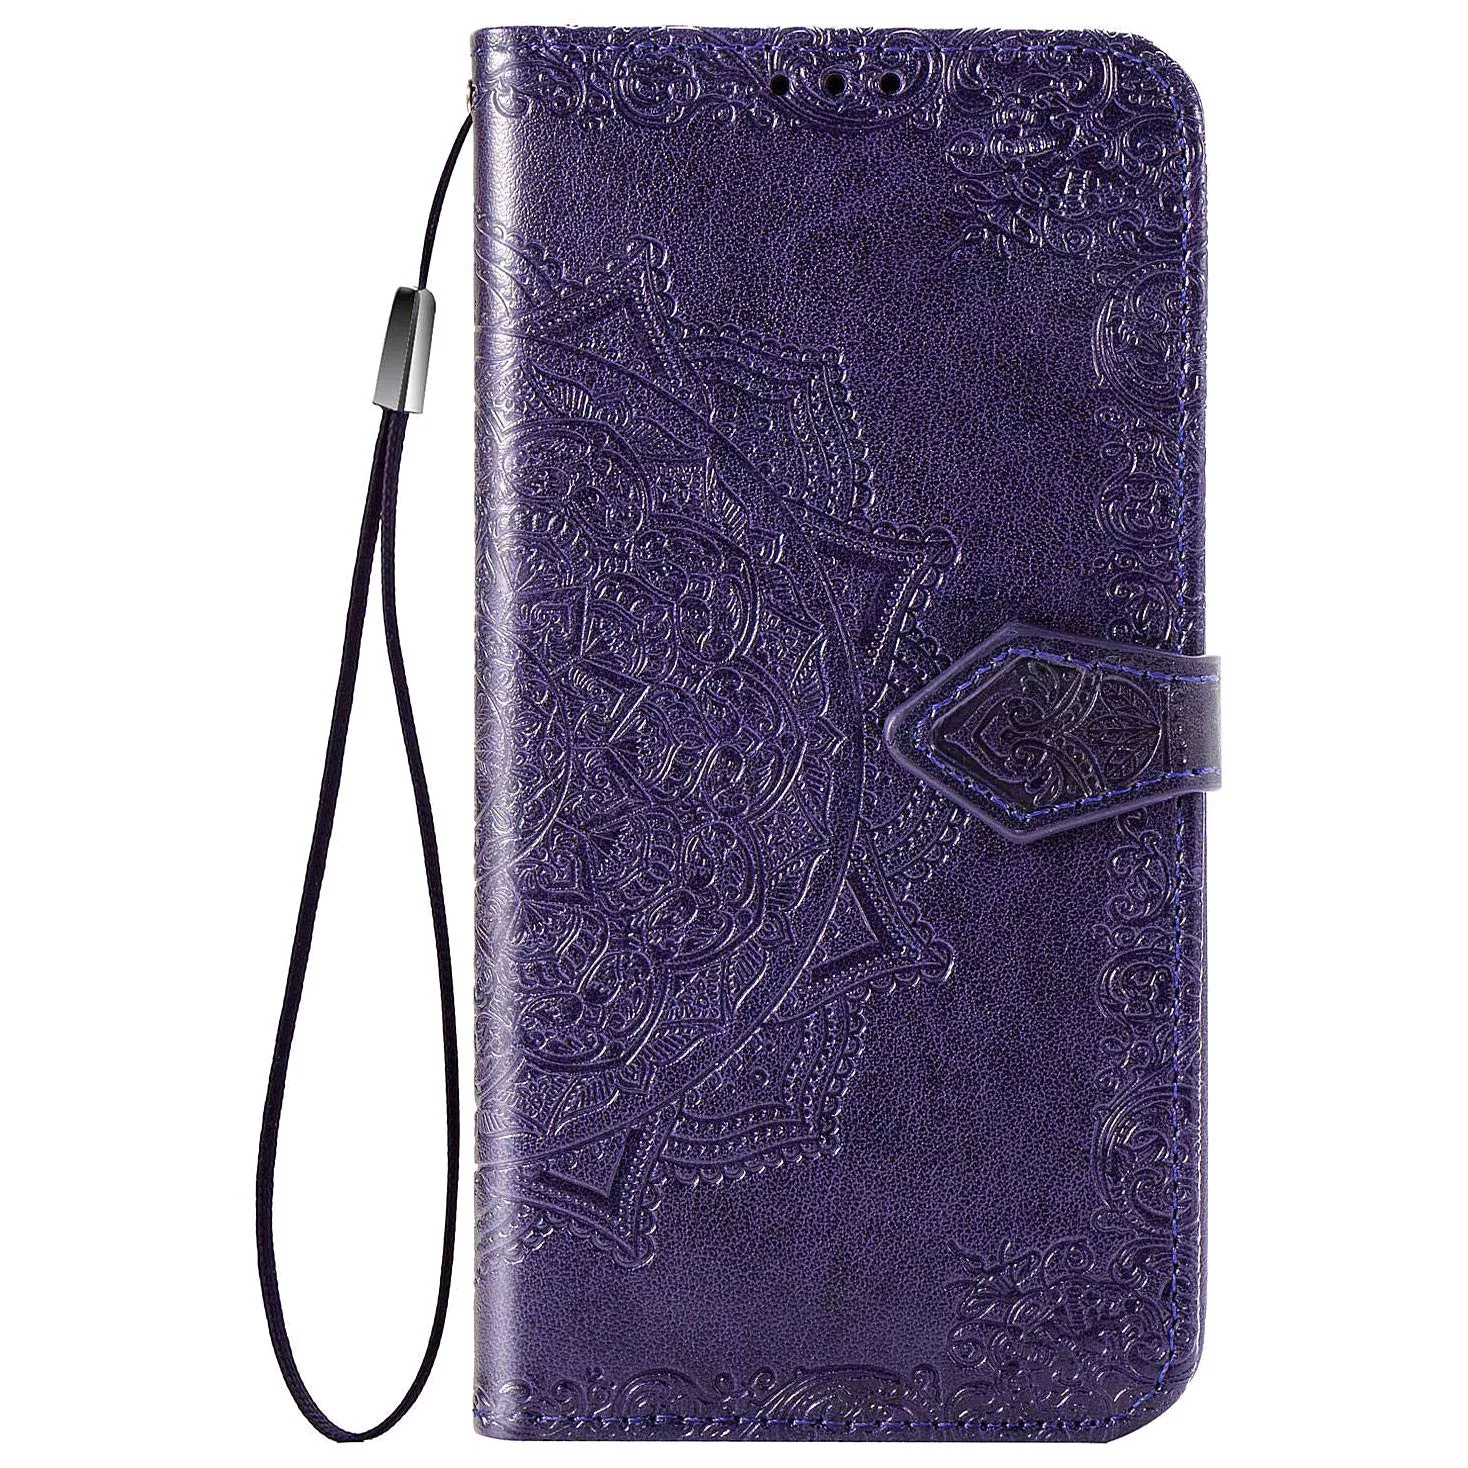 Кожаный чехол (книжка) Art Case с визитницей для Xiaomi Redmi Note 5 Pro / Note 5 (DC), Фиолетовый